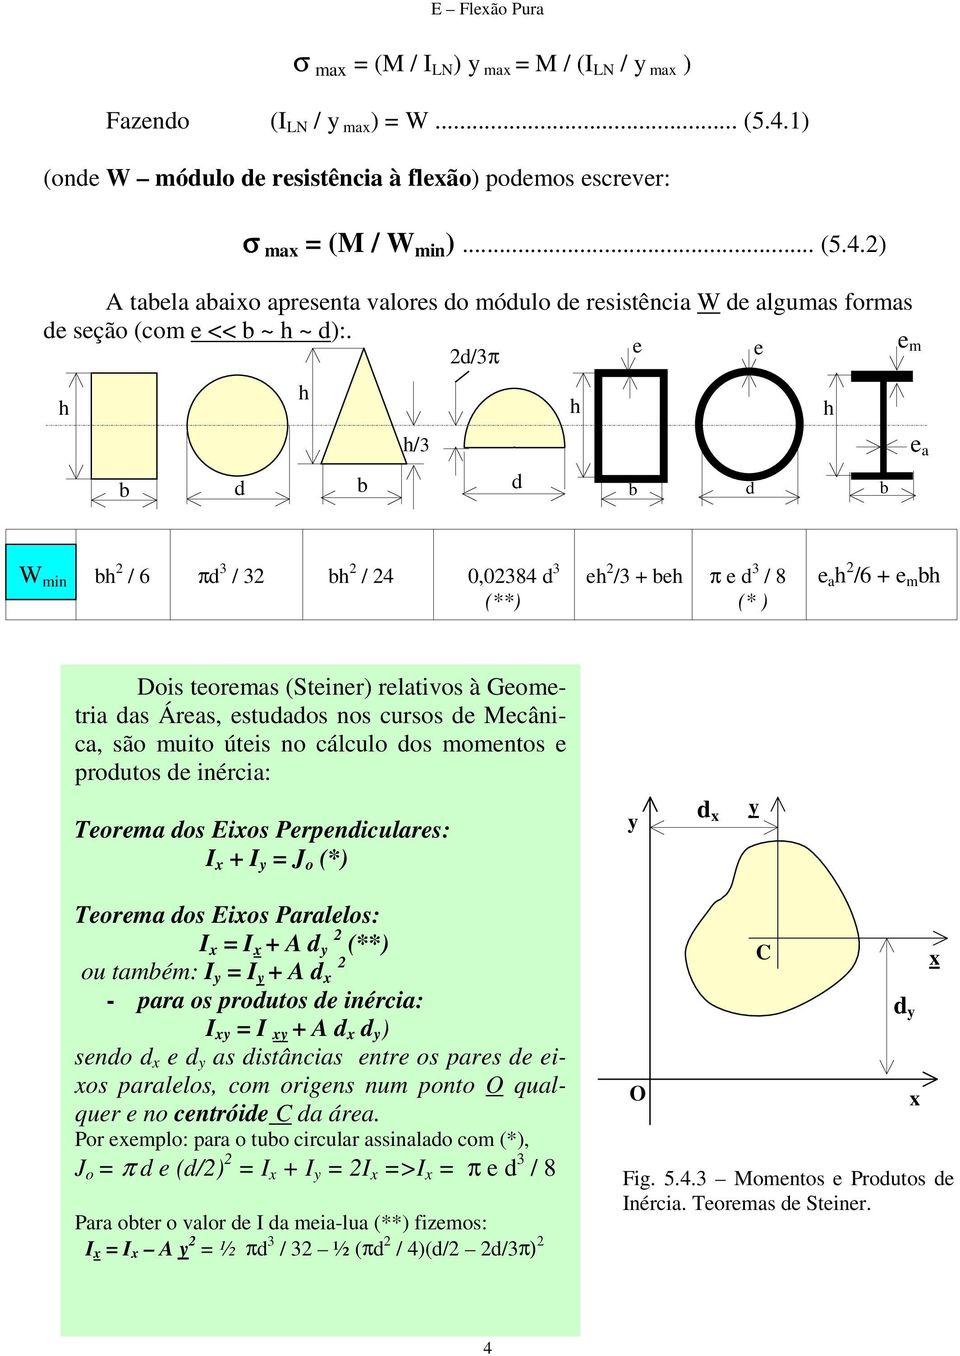 Mecânica, são muito úteis no cálculo dos momentos e produtos de inércia: Teorema dos Eixos Perpendiculares: I x + I = J o (*) d x Teorema dos Eixos Paralelos: I x = I x + A d 2 (**) ou tamém: I = I +